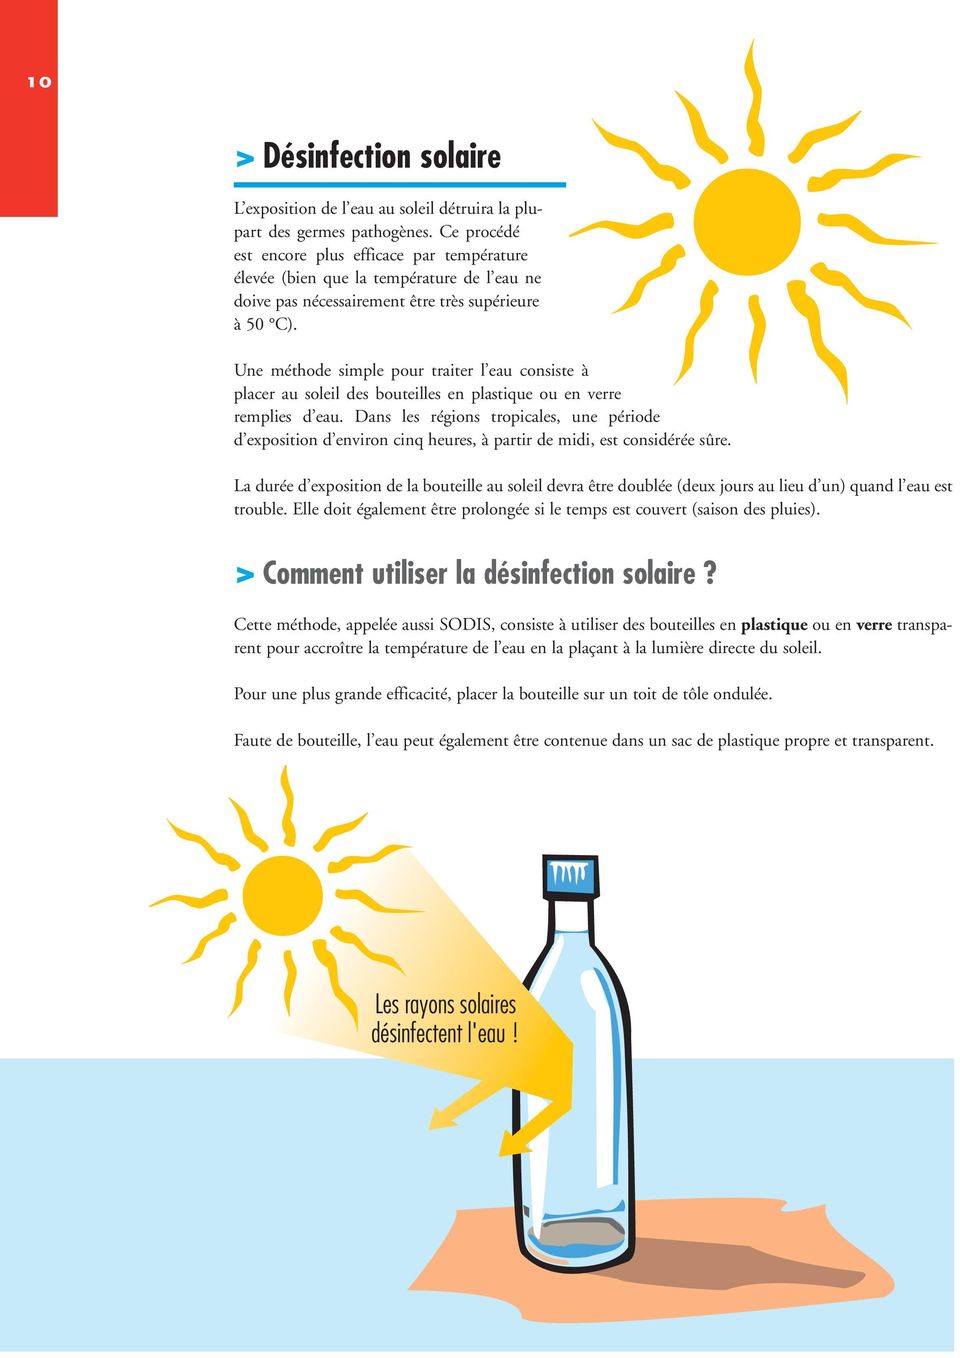 Une méthode simple pour traiter l eau consiste à placer au soleil des bouteilles en plastique ou en verre remplies d eau.